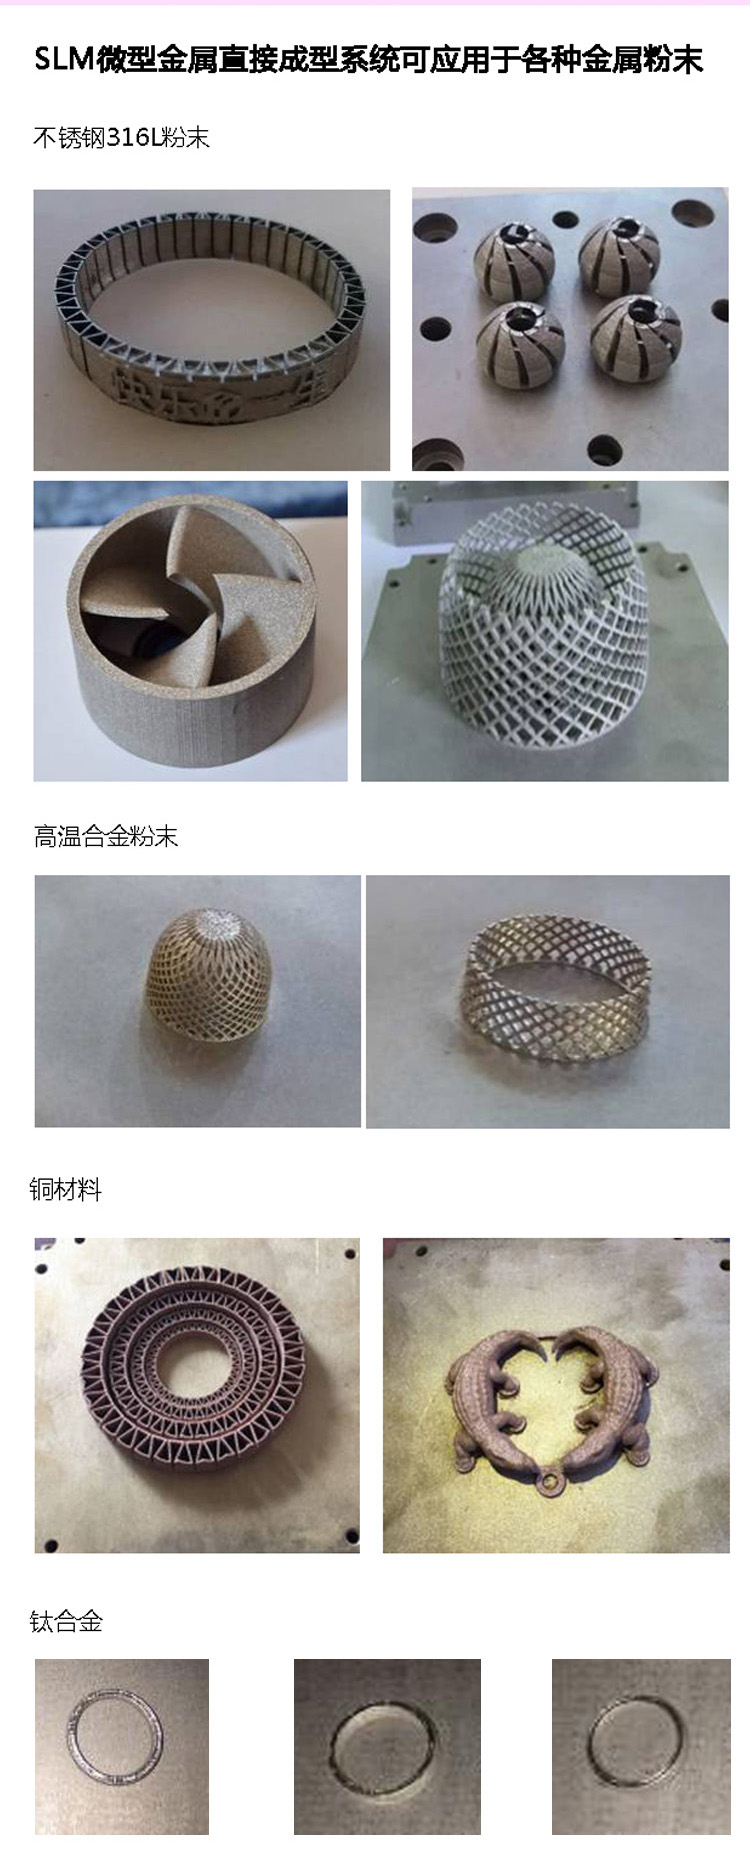 大族激光增材制造研讨会济南站：筹建金属3D打印技术服务生态联盟